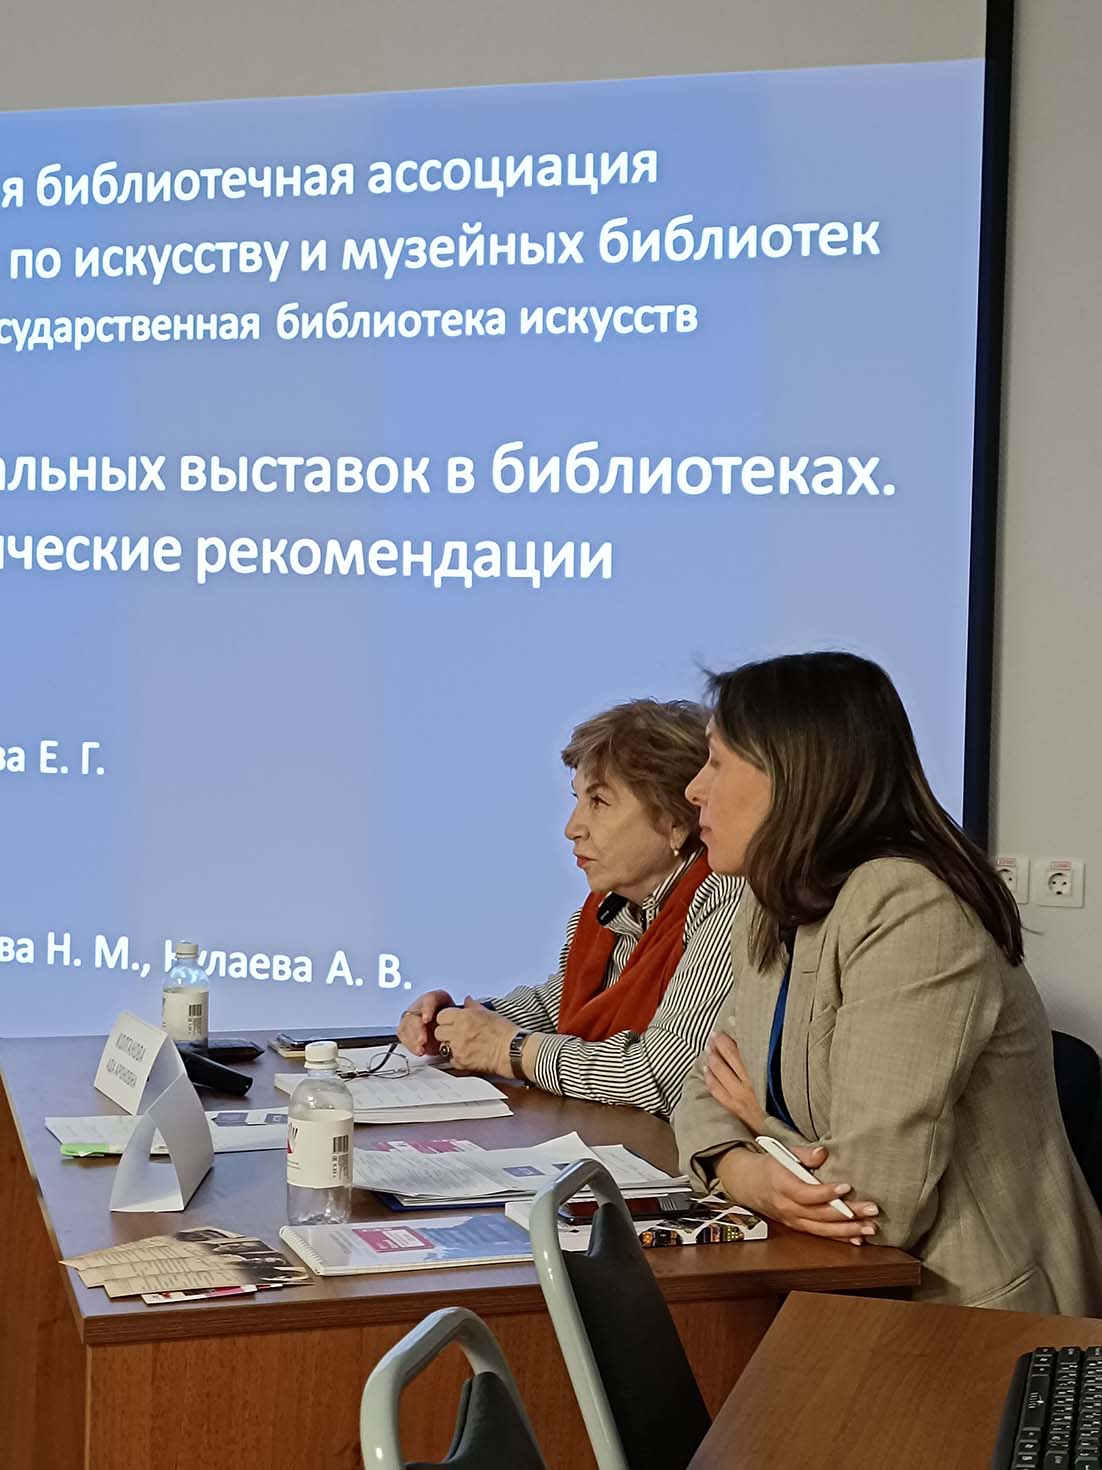 Специалисты РГБИ представили на Всероссийском библиотечном конгрессе новые методические рекомендации по созданию виртуальных выставок в библиотеках